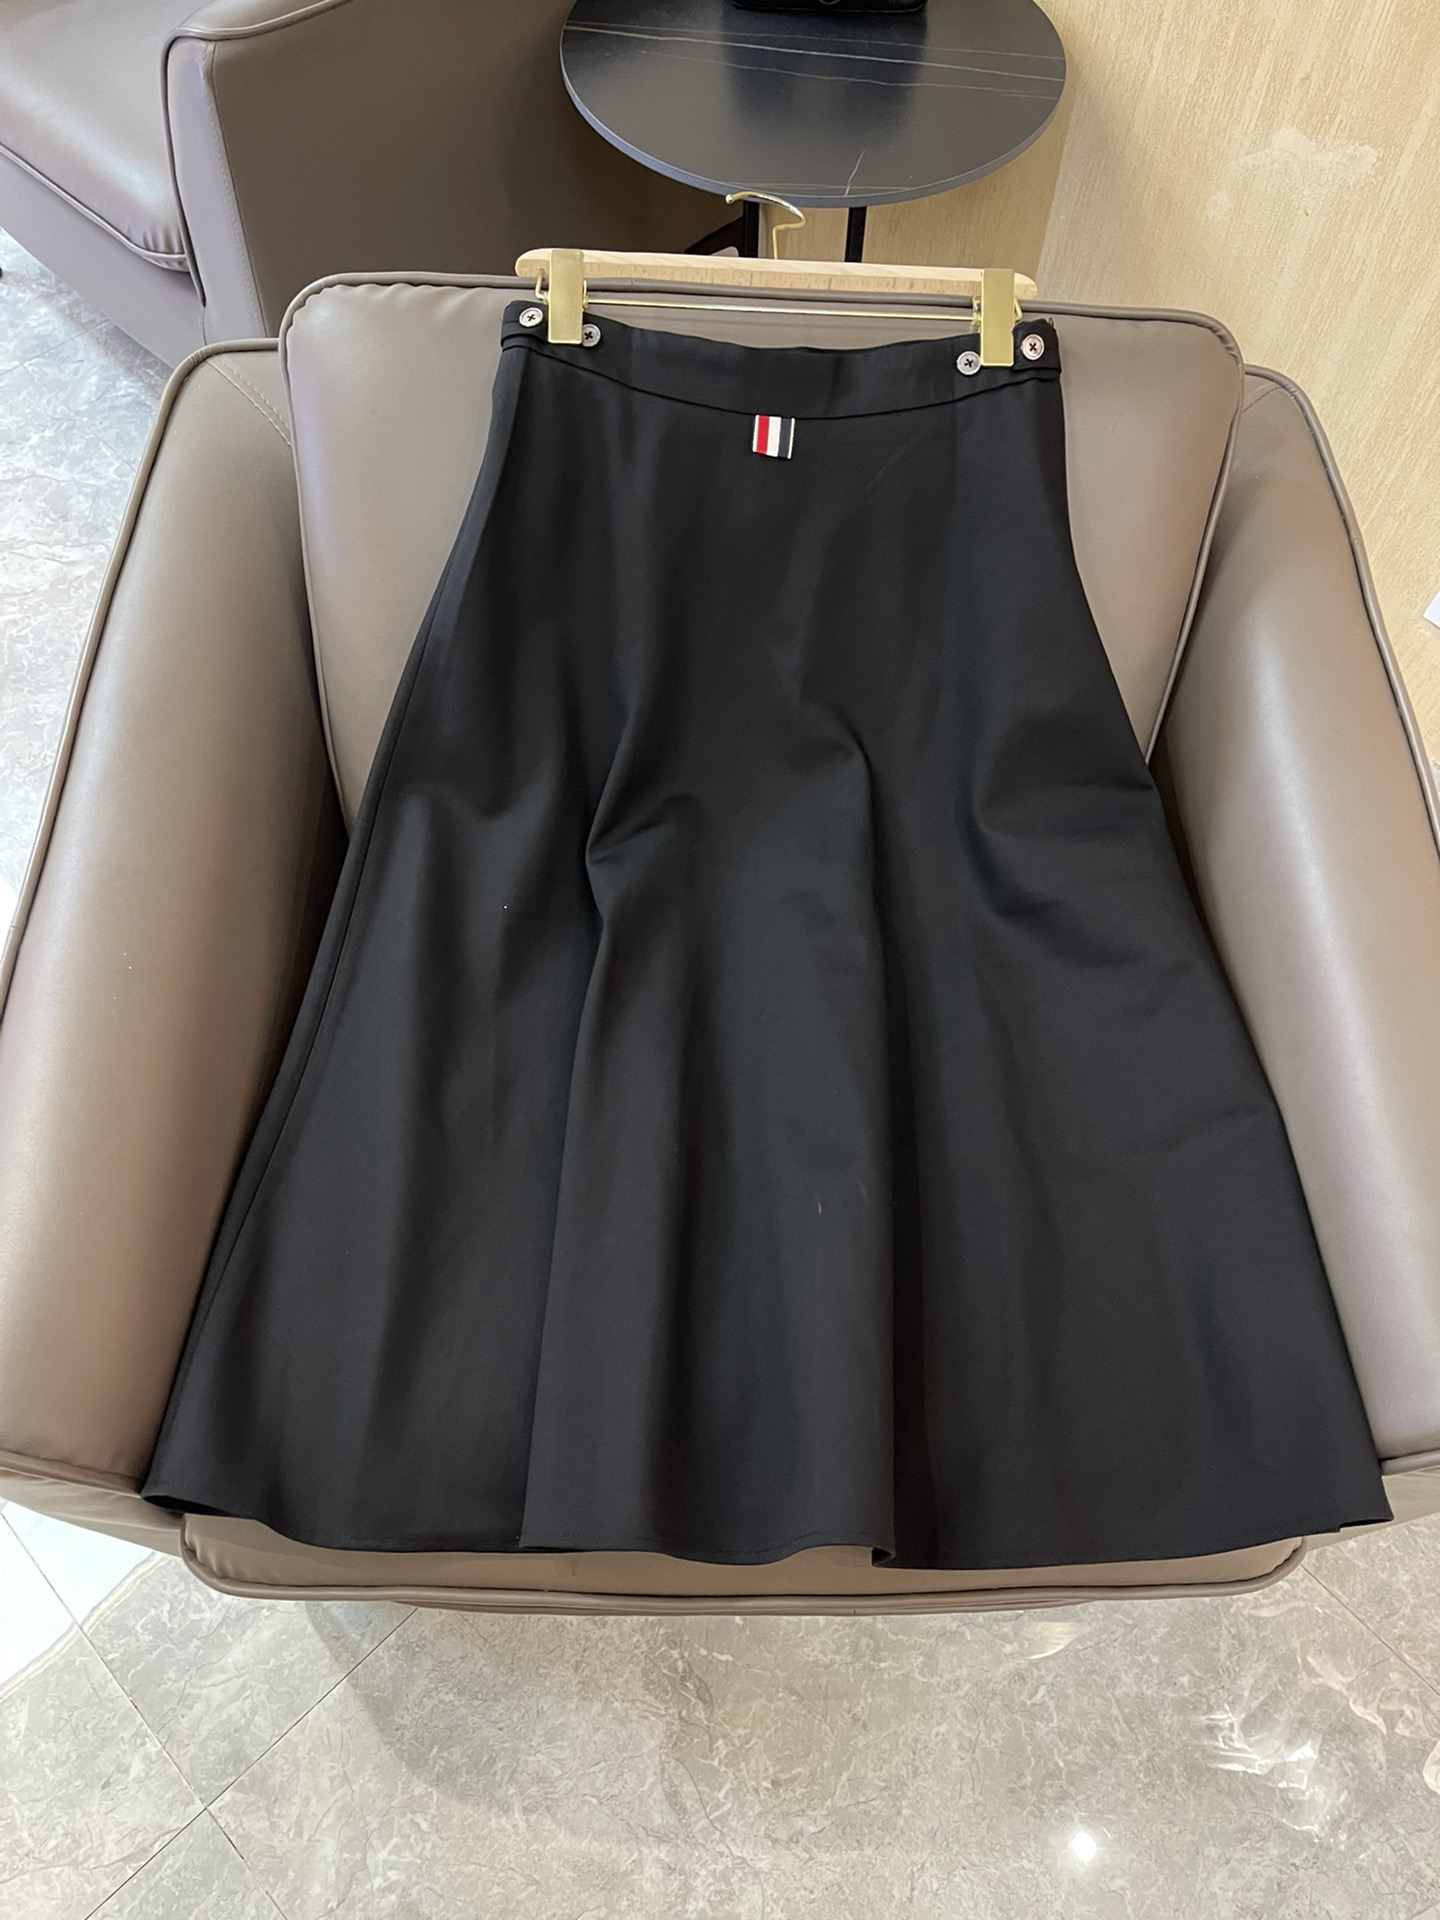 KZ008#新款半裙TB 最新款 西装料 长半裙 灰色 黑色 36-38-40-42